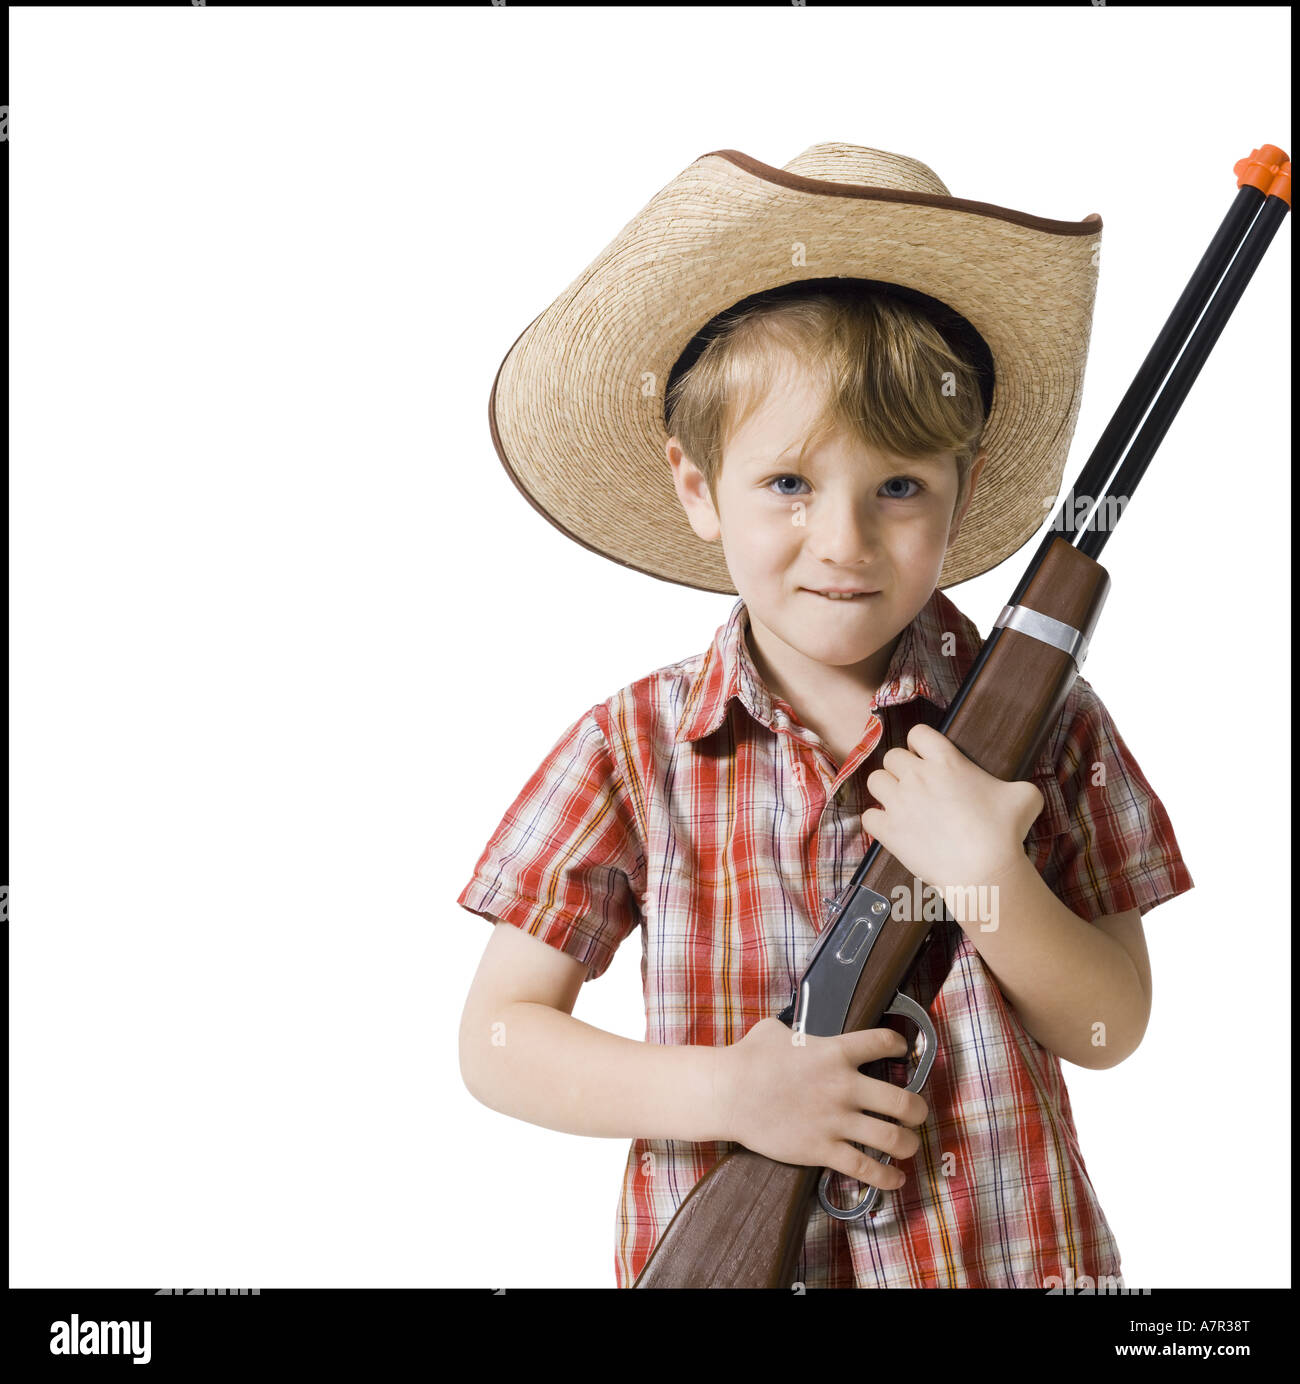 Niño con rifle de juguete y sombrero de vaquero Fotografía de stock - Alamy